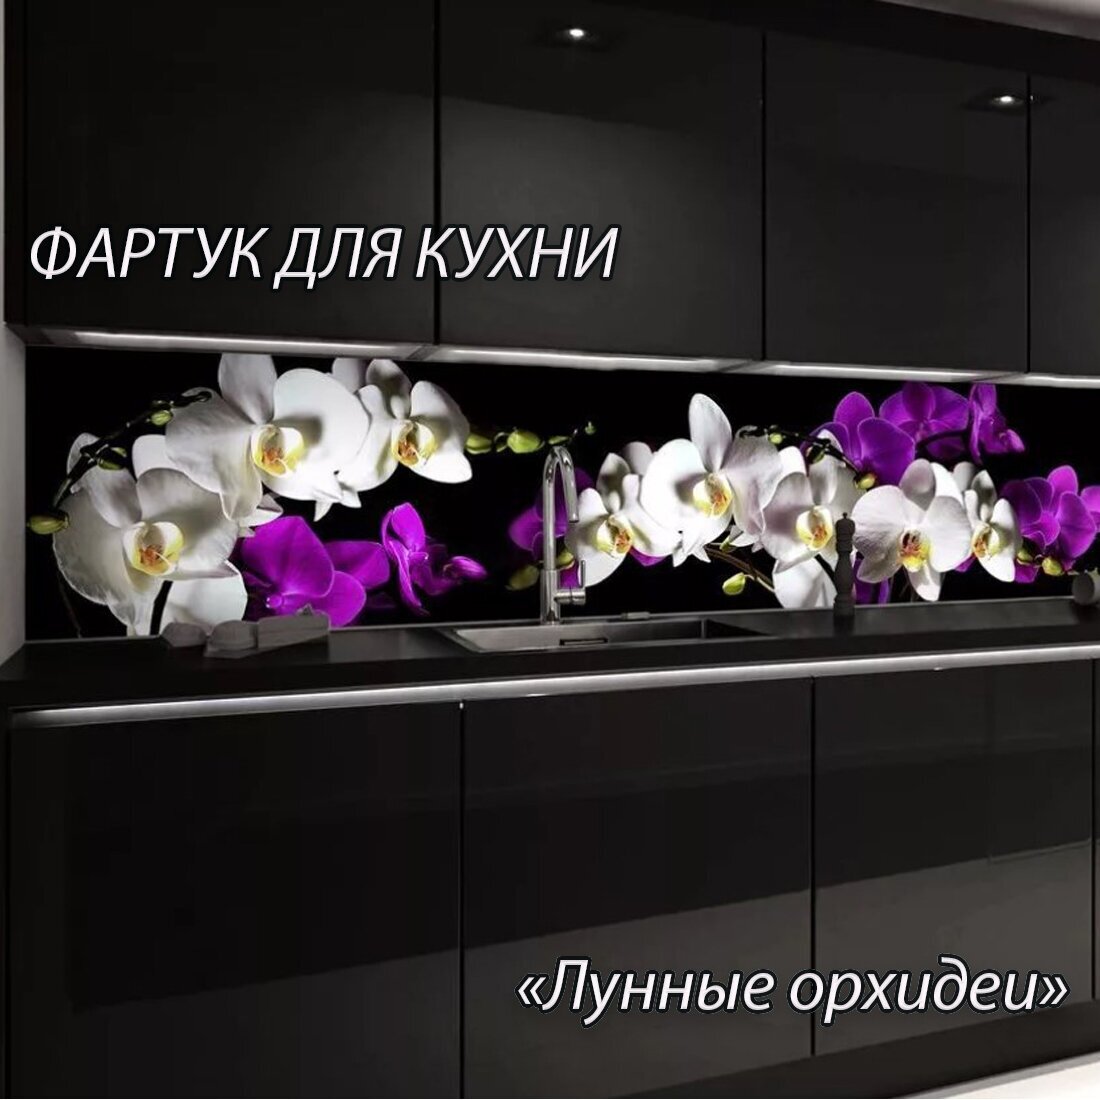 Фартук для кухни из АБС пластика "Лунные орхидеи" 2000*600*1,5мм. Кухонный фартук ABS с фотопечатью.